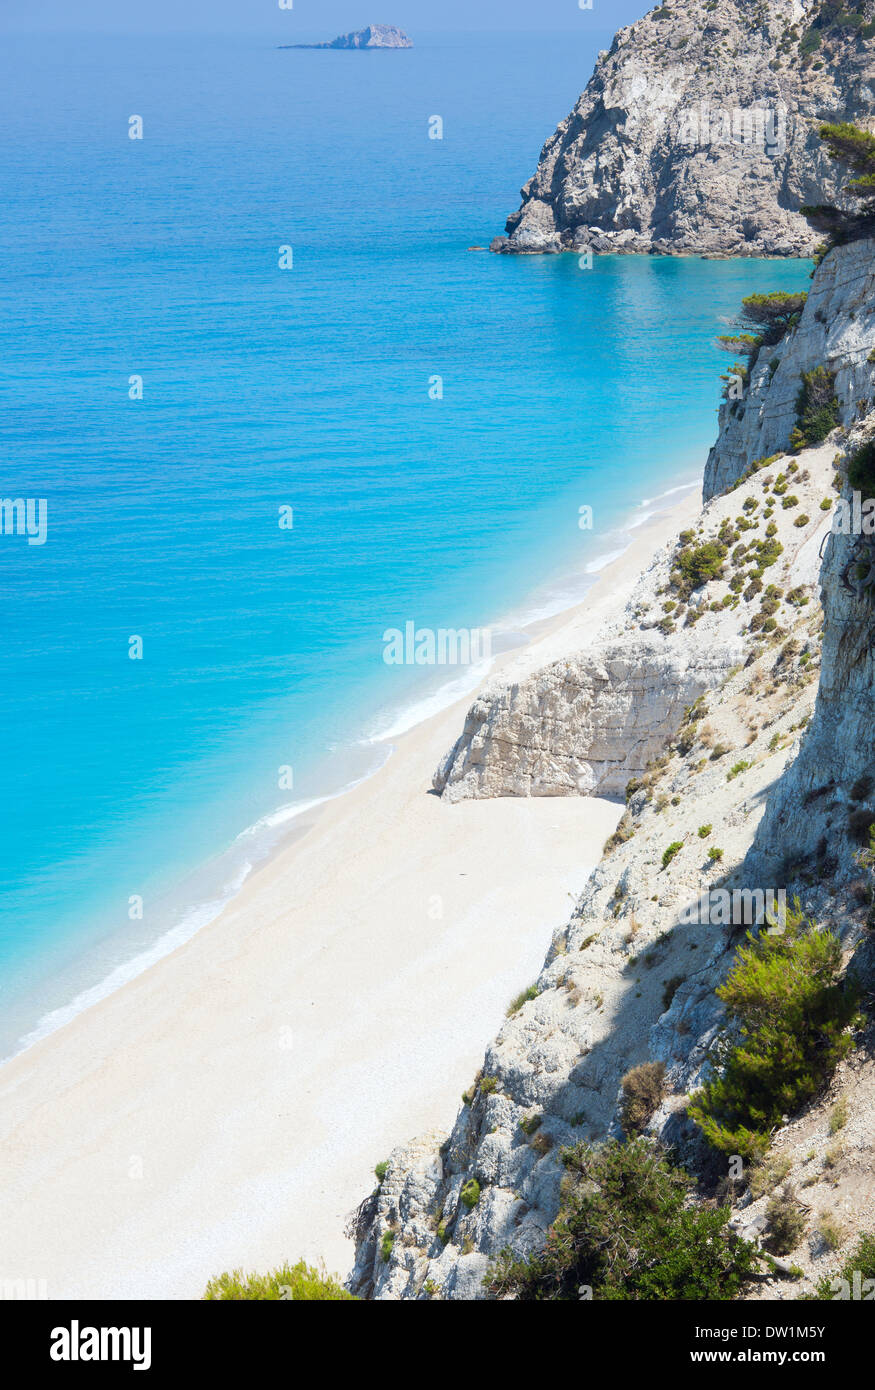 White Egremni beach (Lefkada, Greece) Stock Photo